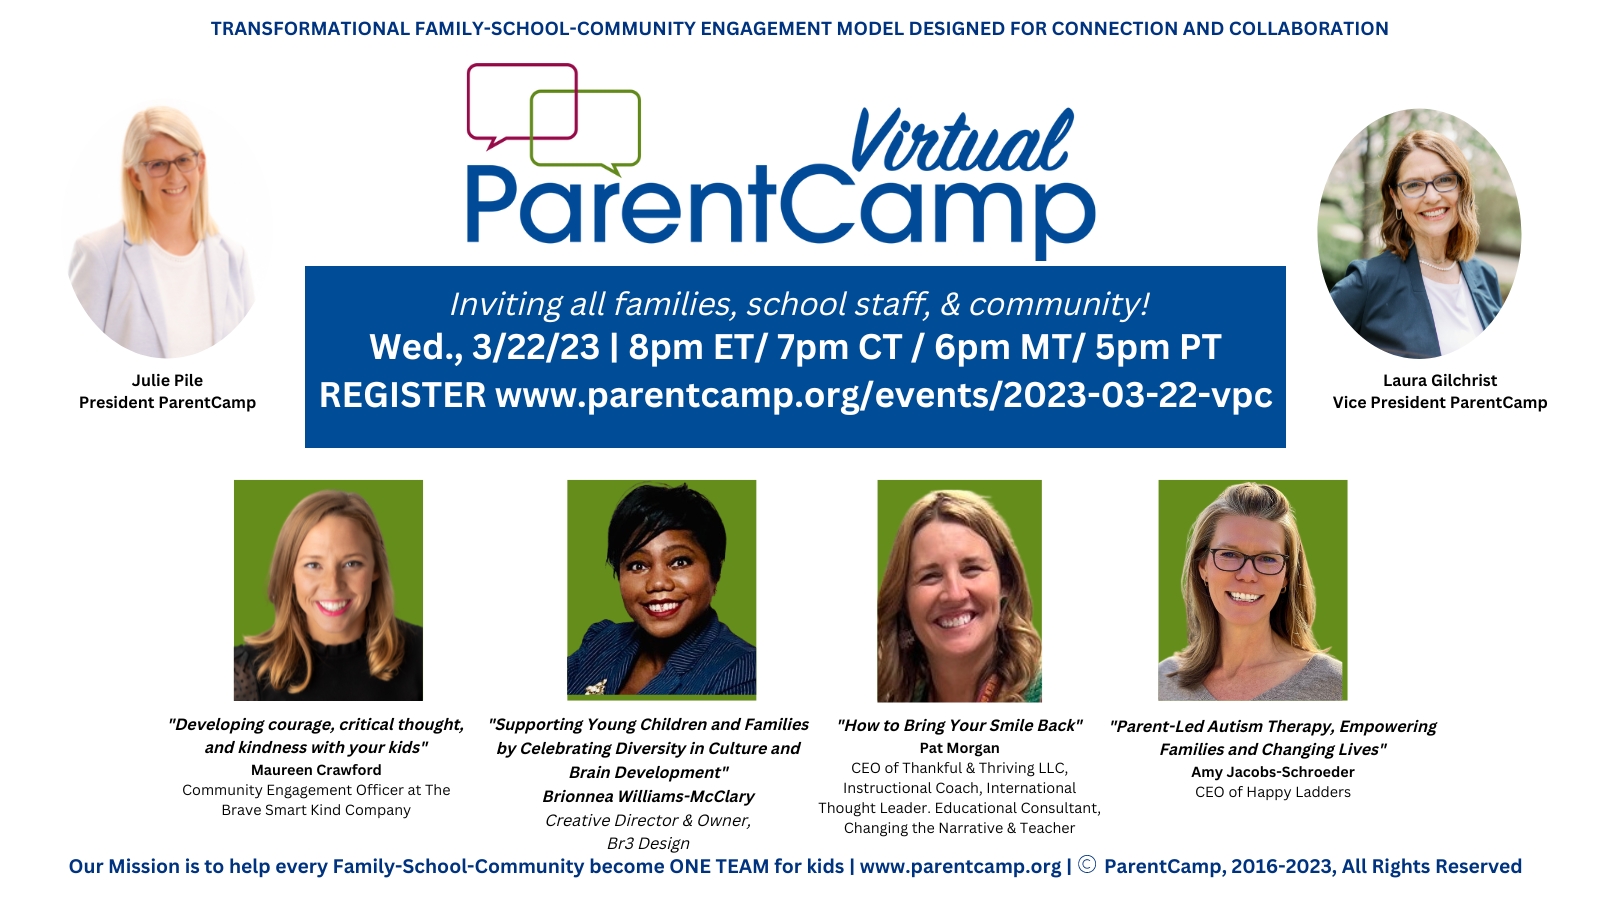 Virtual ParentCamp 3/22/23